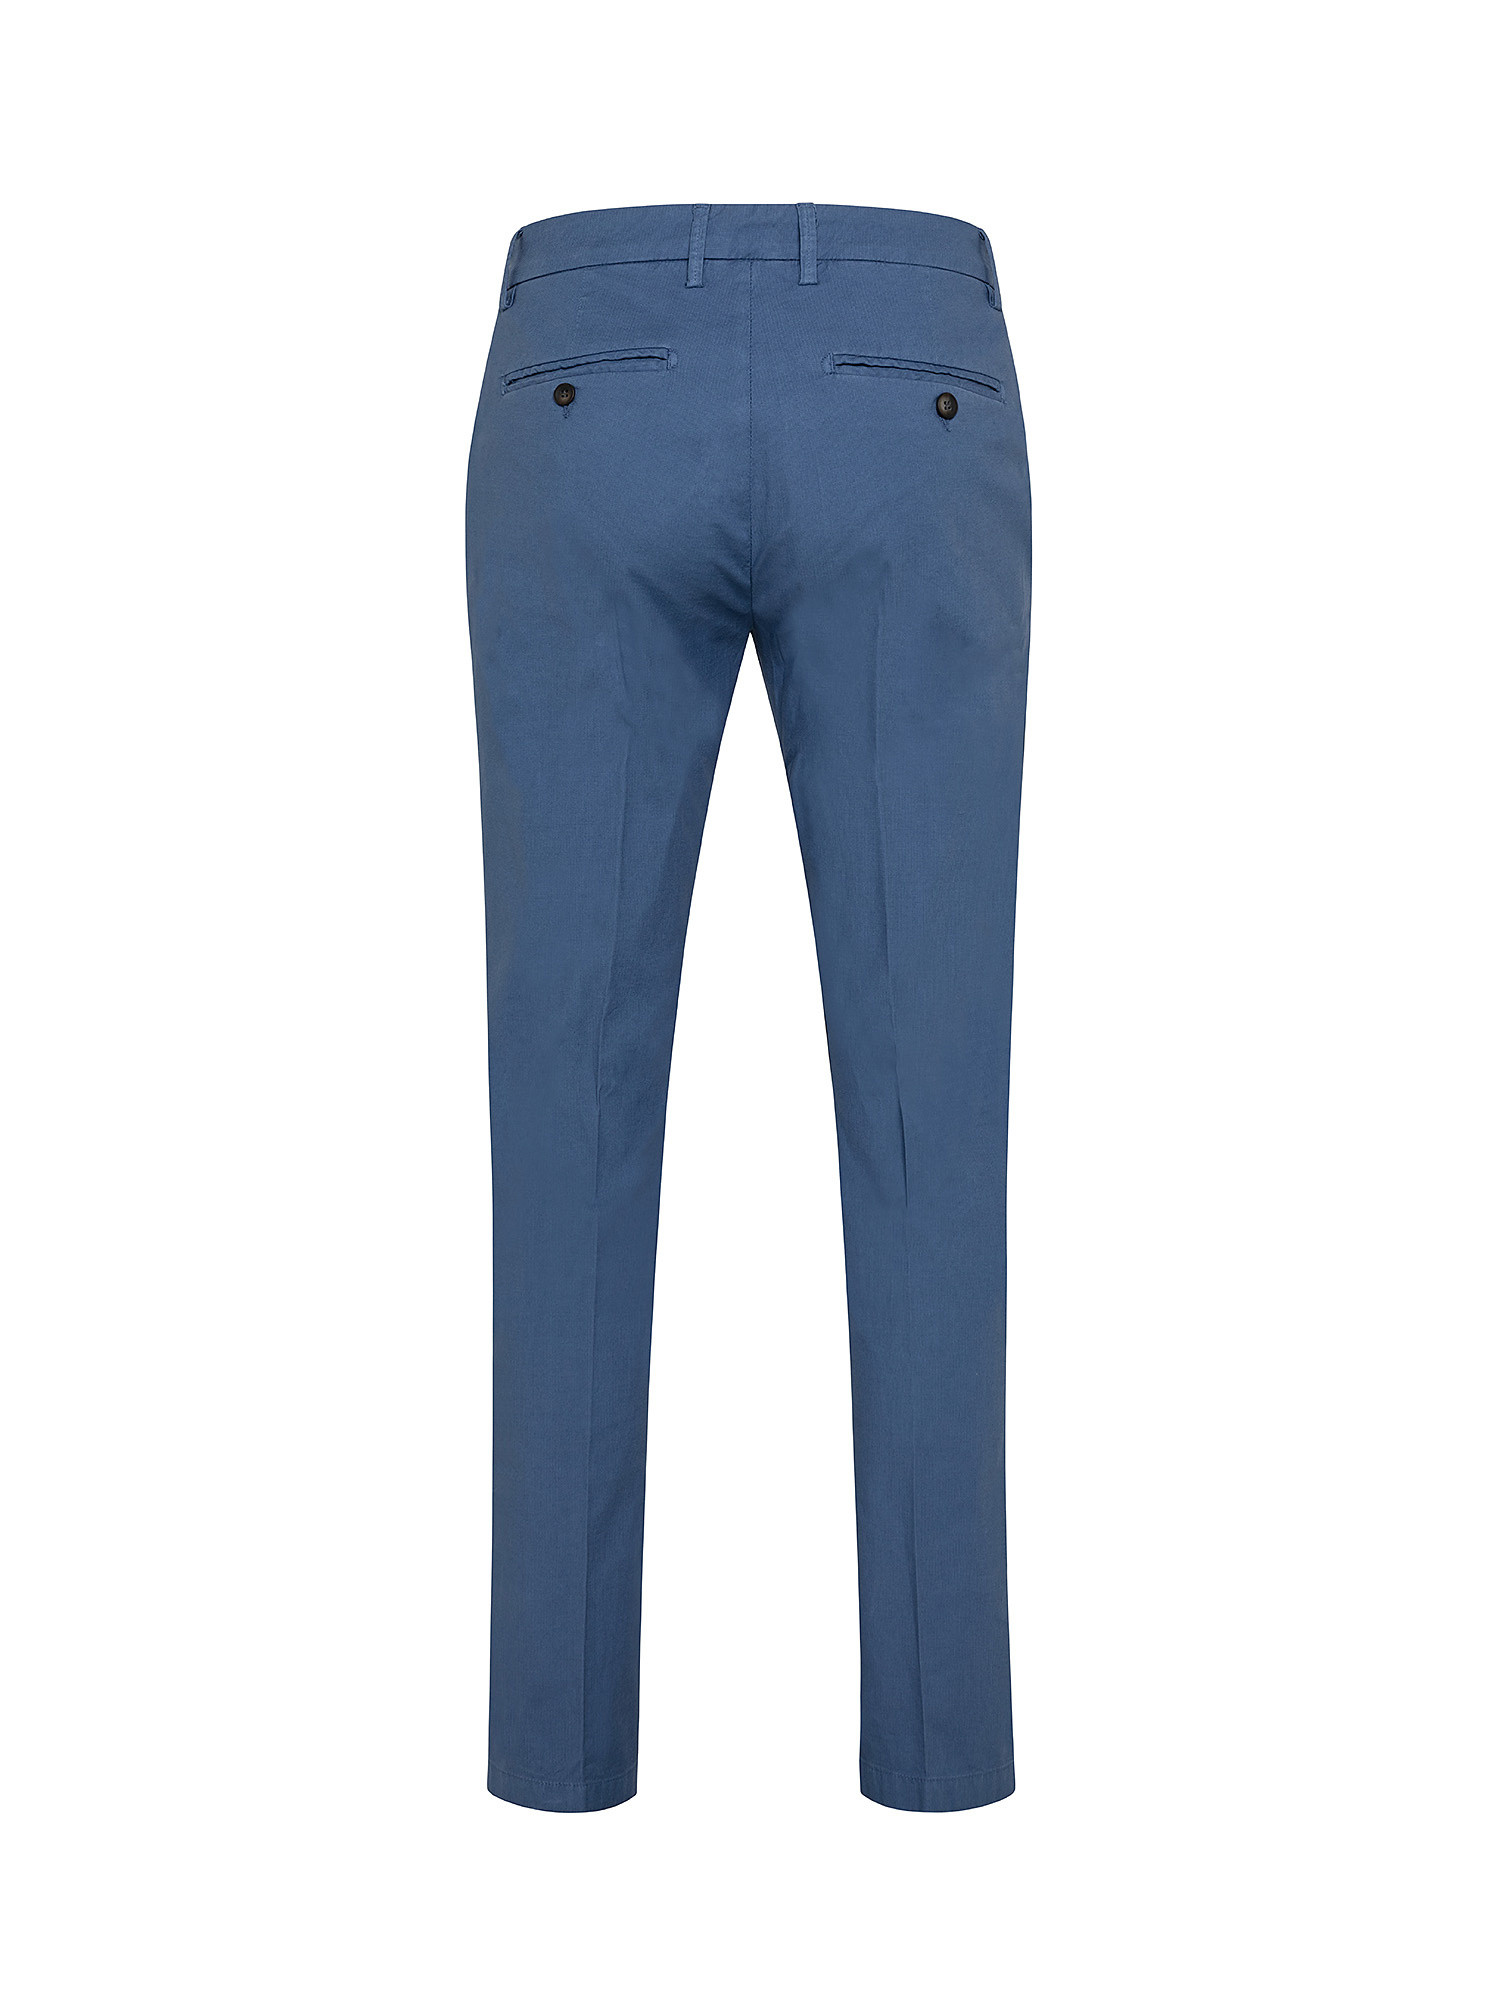 Pantalone chino, Blu, large image number 1